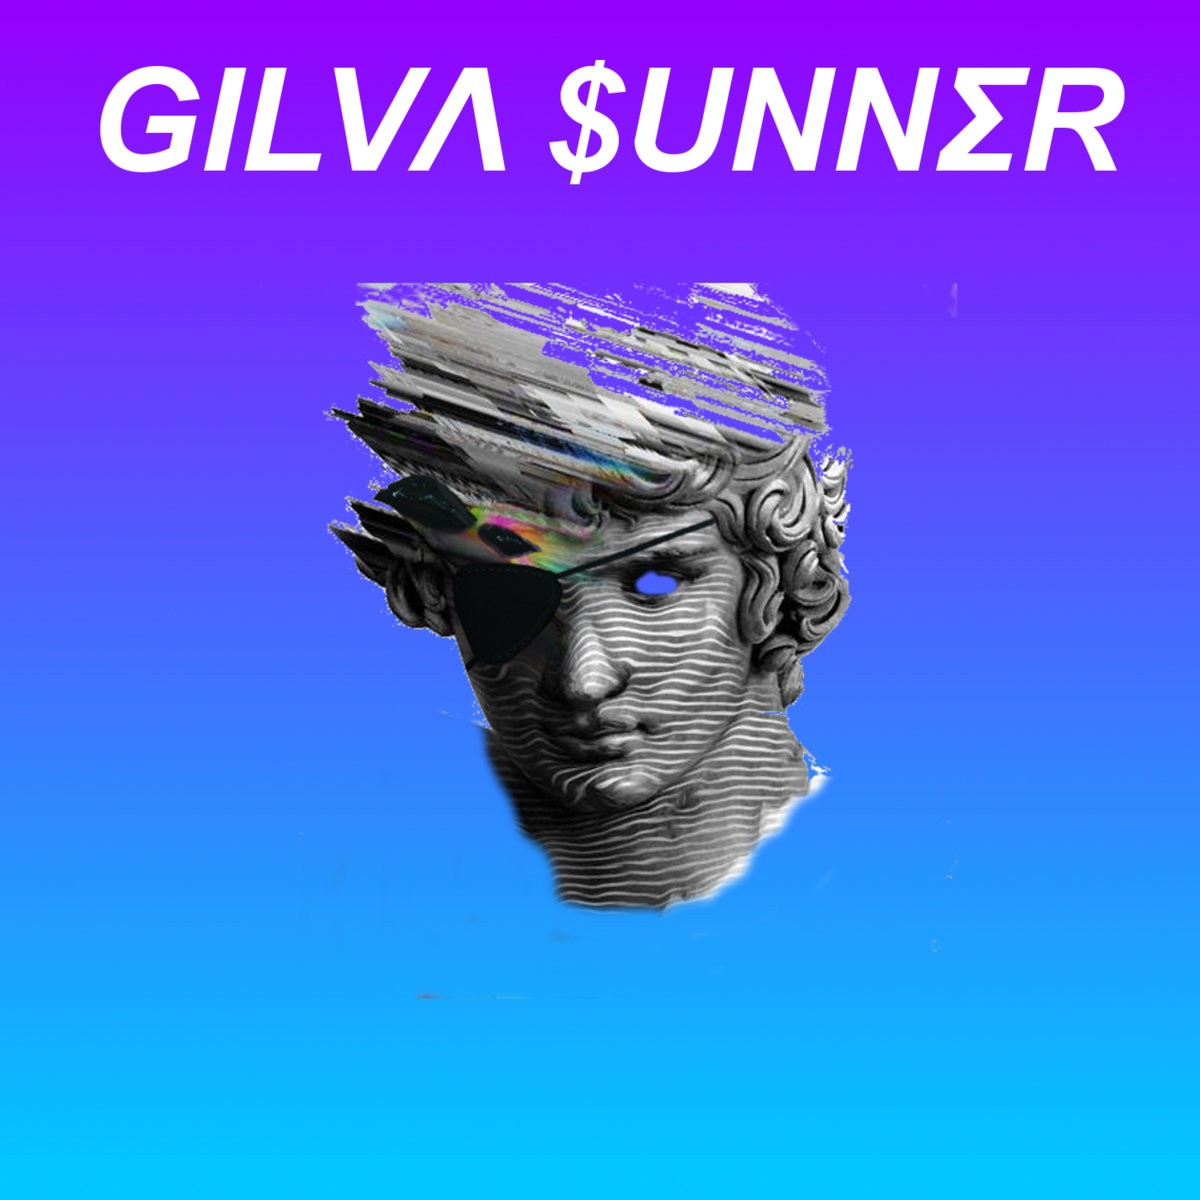 Gilva Sunner